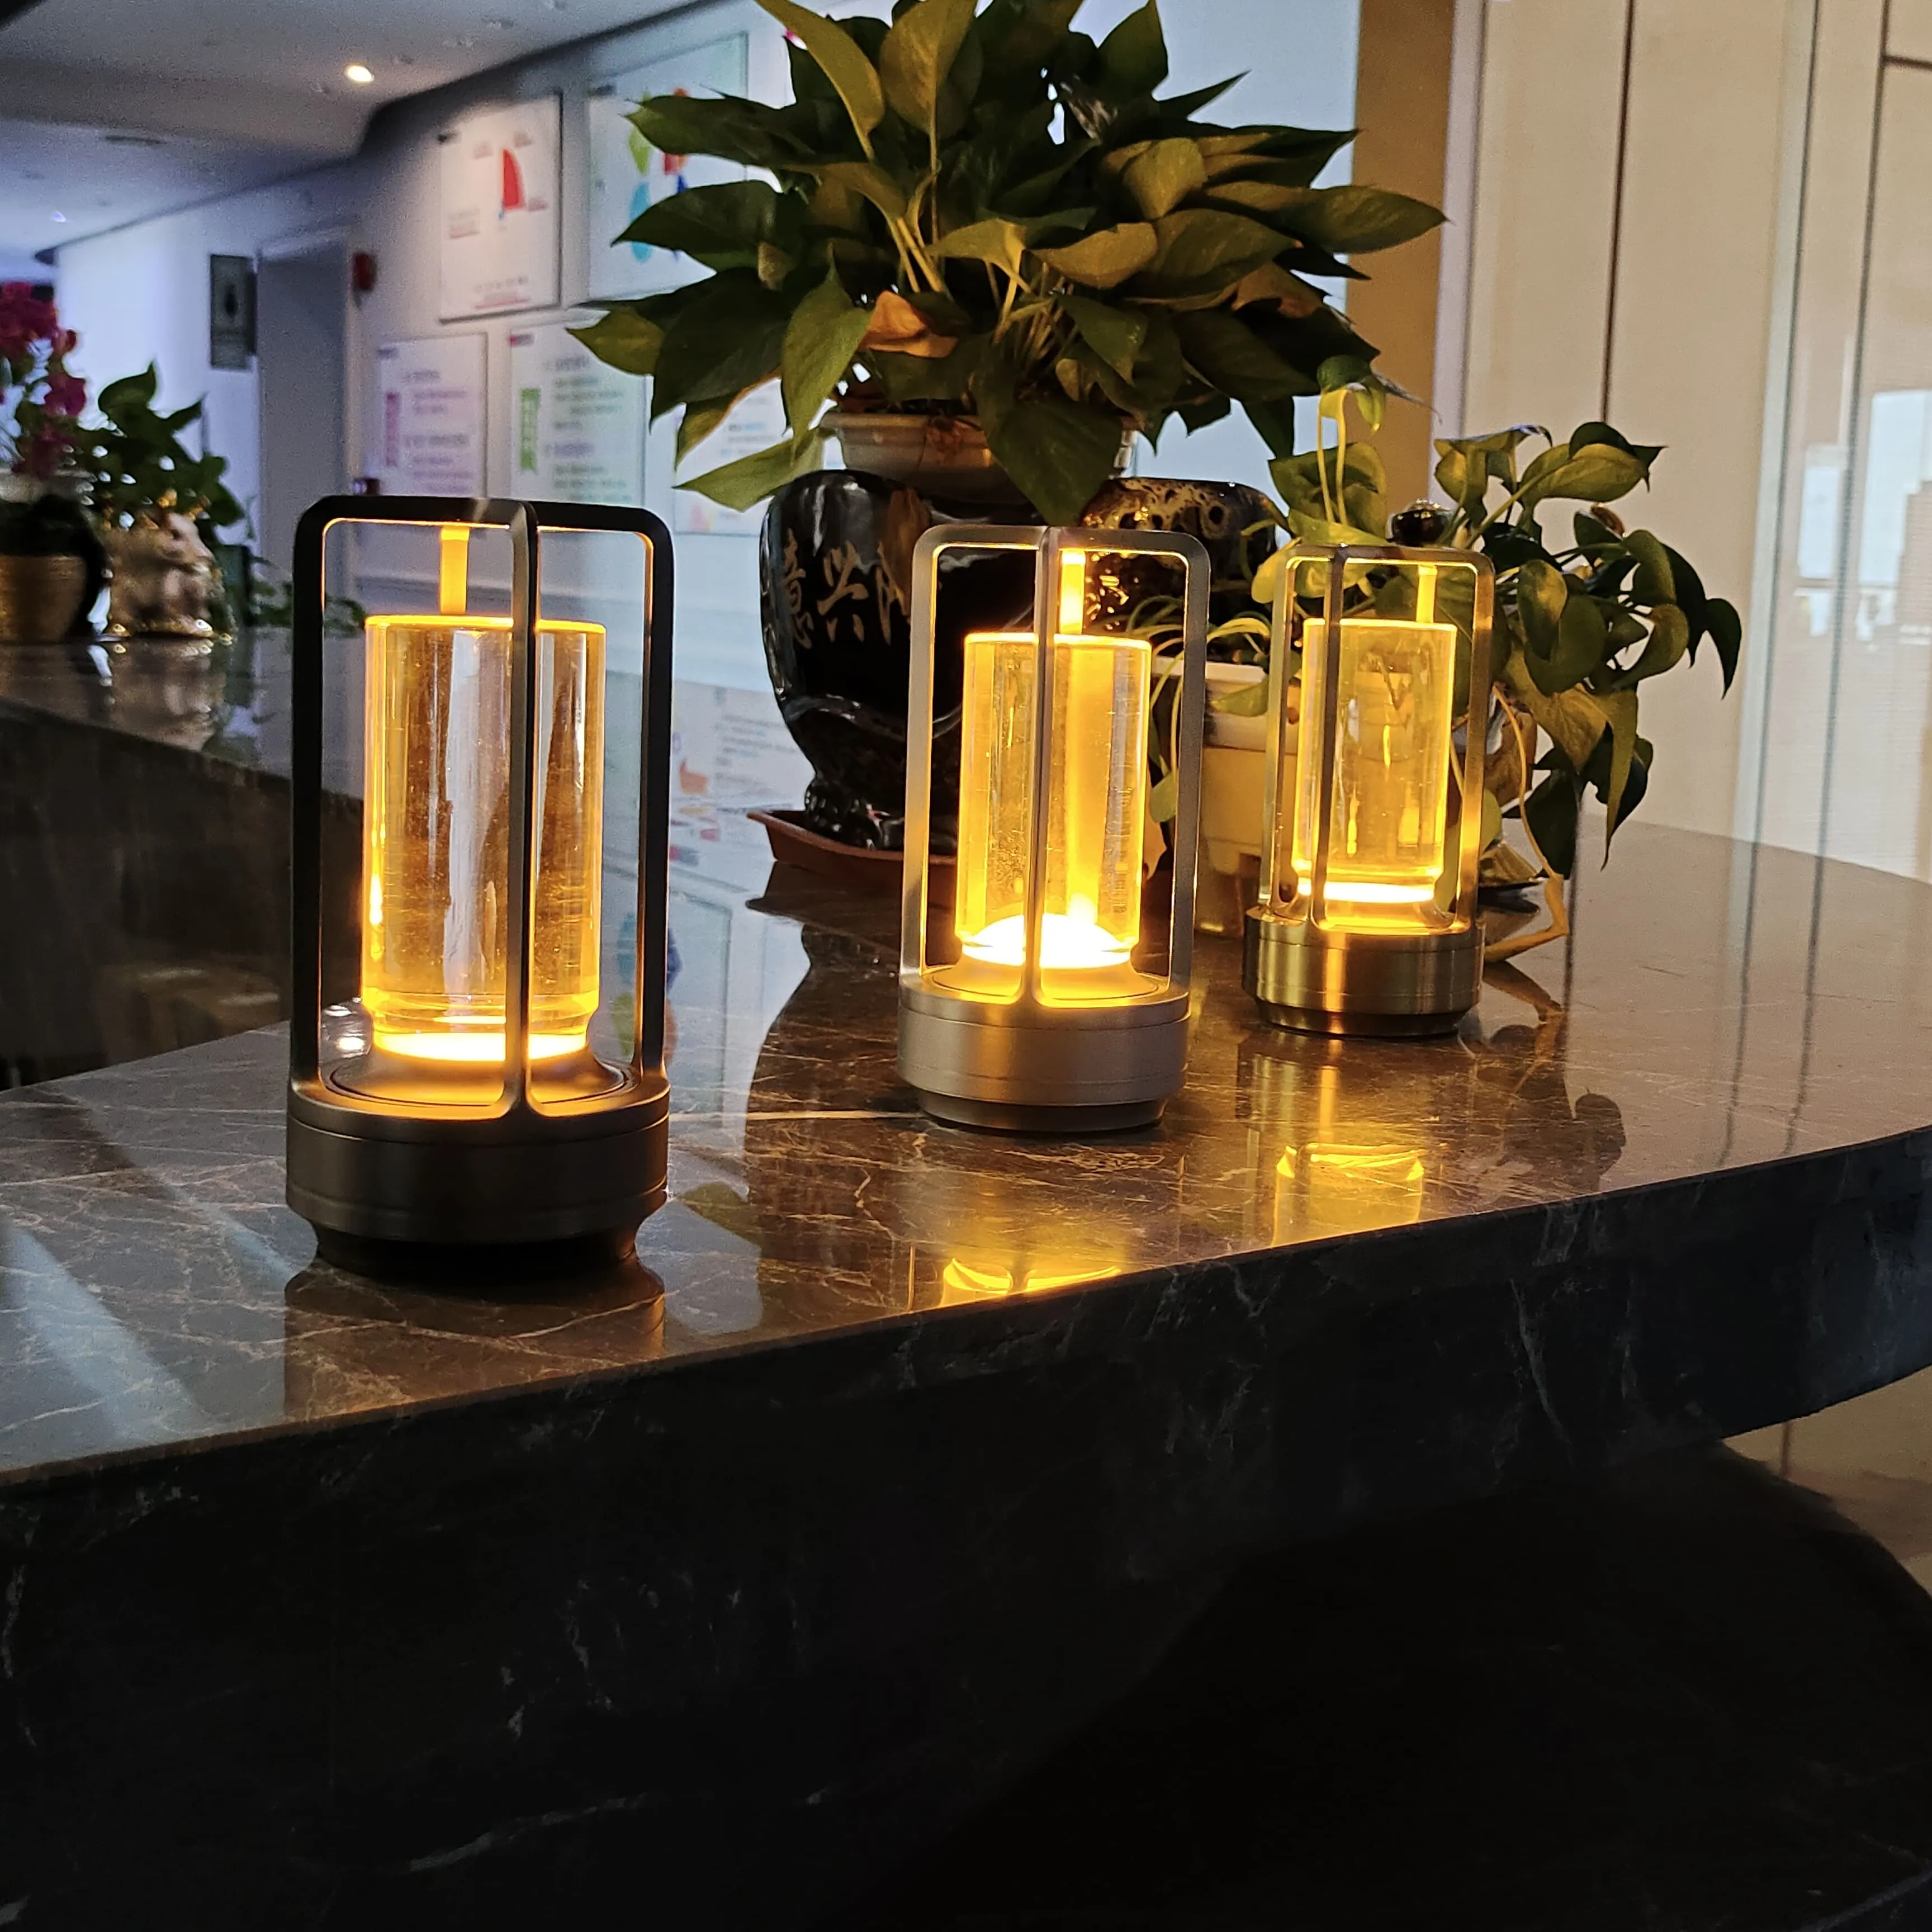 Nanhui schnur lose LED Tisch lampe Batterie wasserdichte Hotel Schreibtisch lampe Restaurant Luxus drahtlose Nachttisch lampe